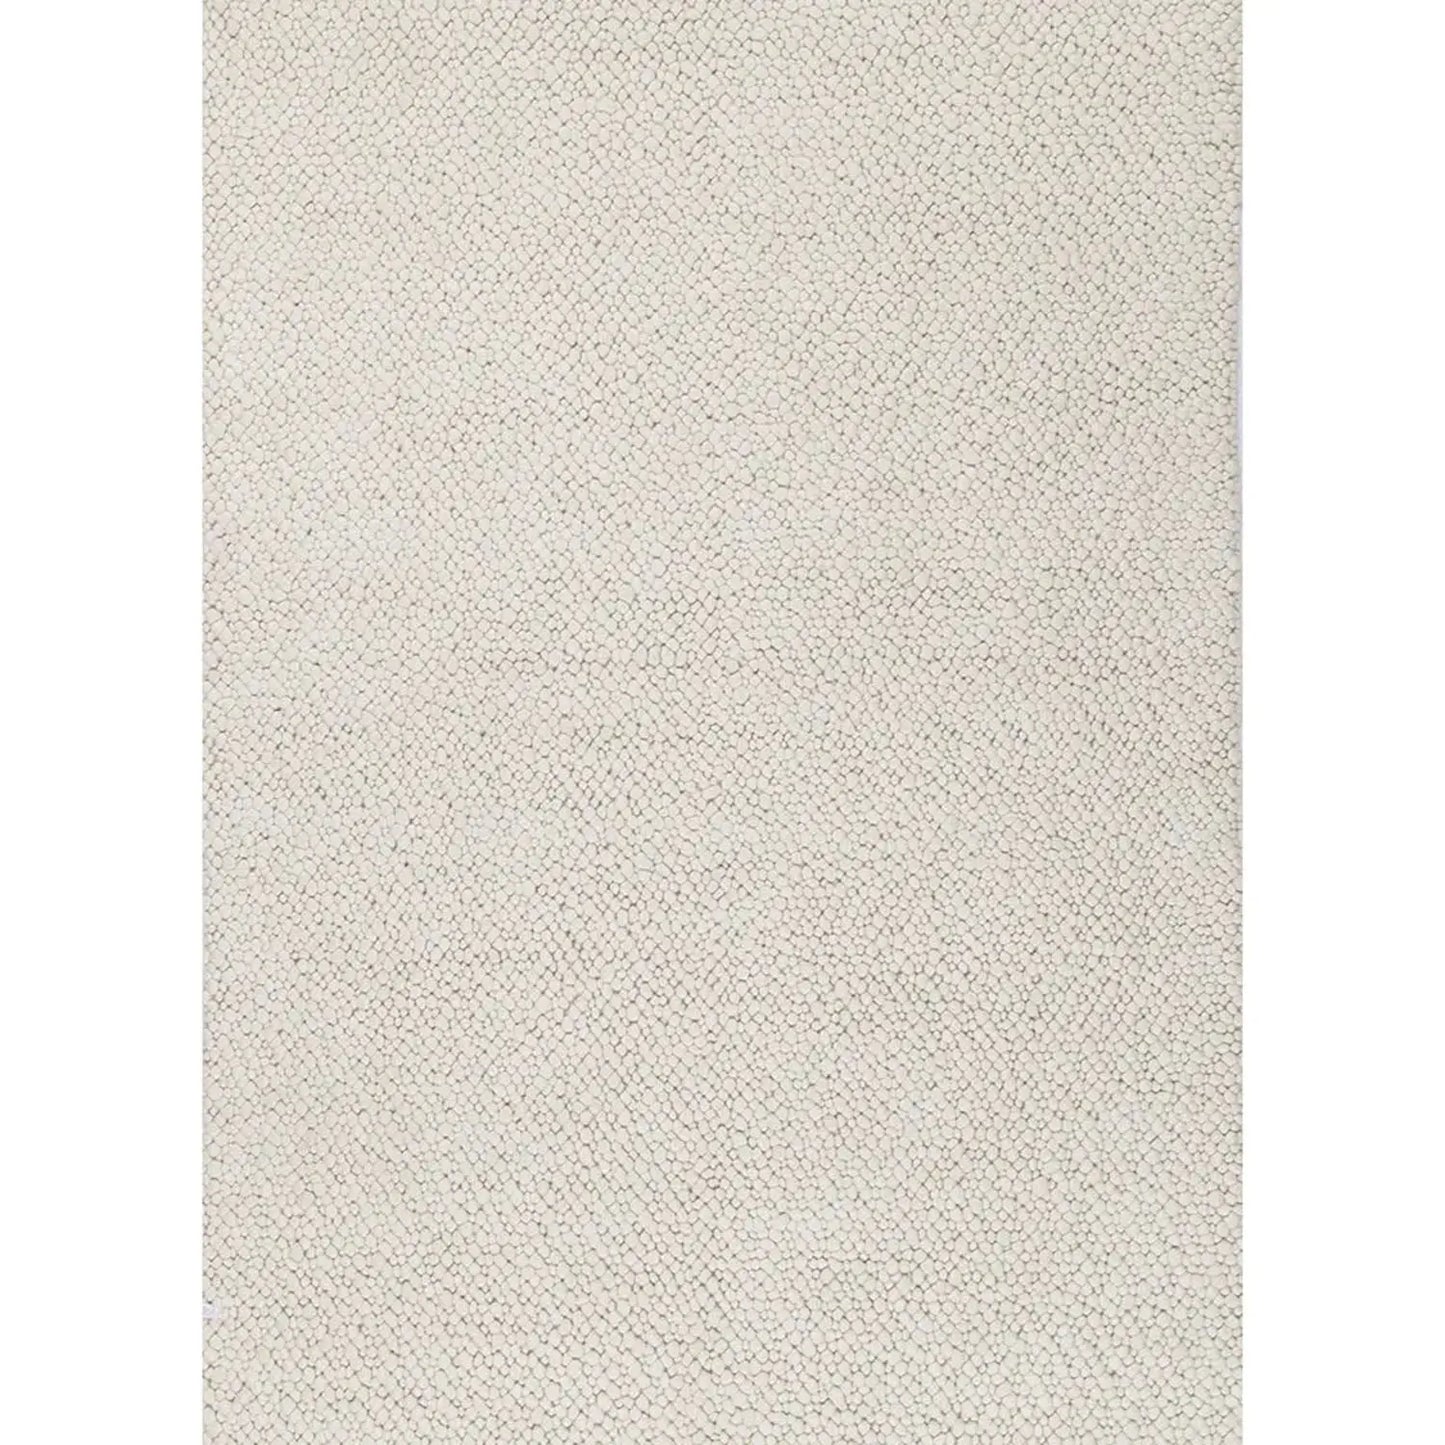 Hampshire Ivory Plain Wool Rug DecoRug